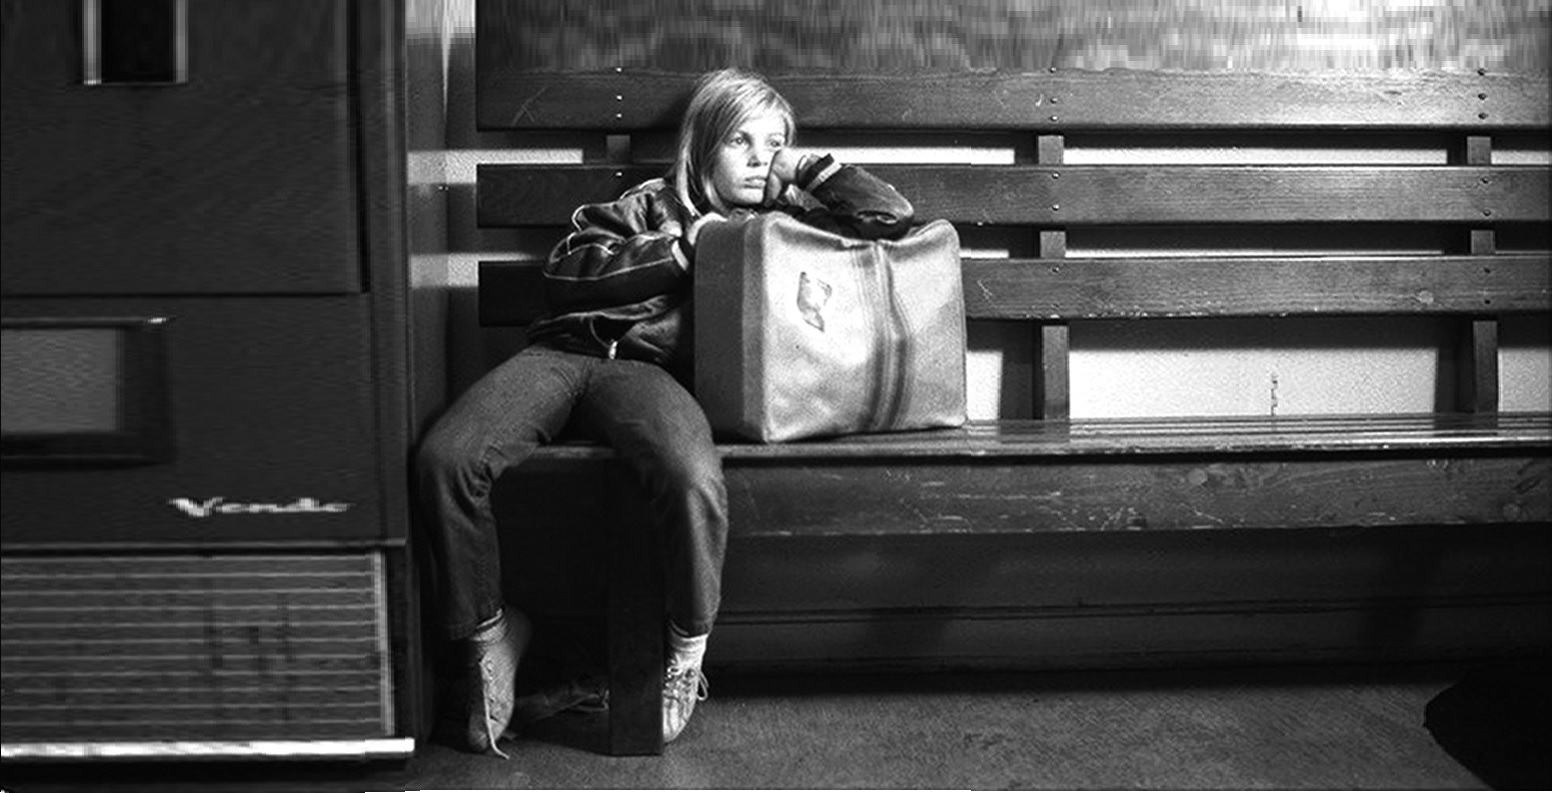 Χαρακτηριστική σκηνή απο την ταινία Η Αλίκη στις πόλεις (1974) με την Αλίκη να ειναι αραγμένη σε ενα παγκάκι έχοντας δίπλα μια βαλίτσα